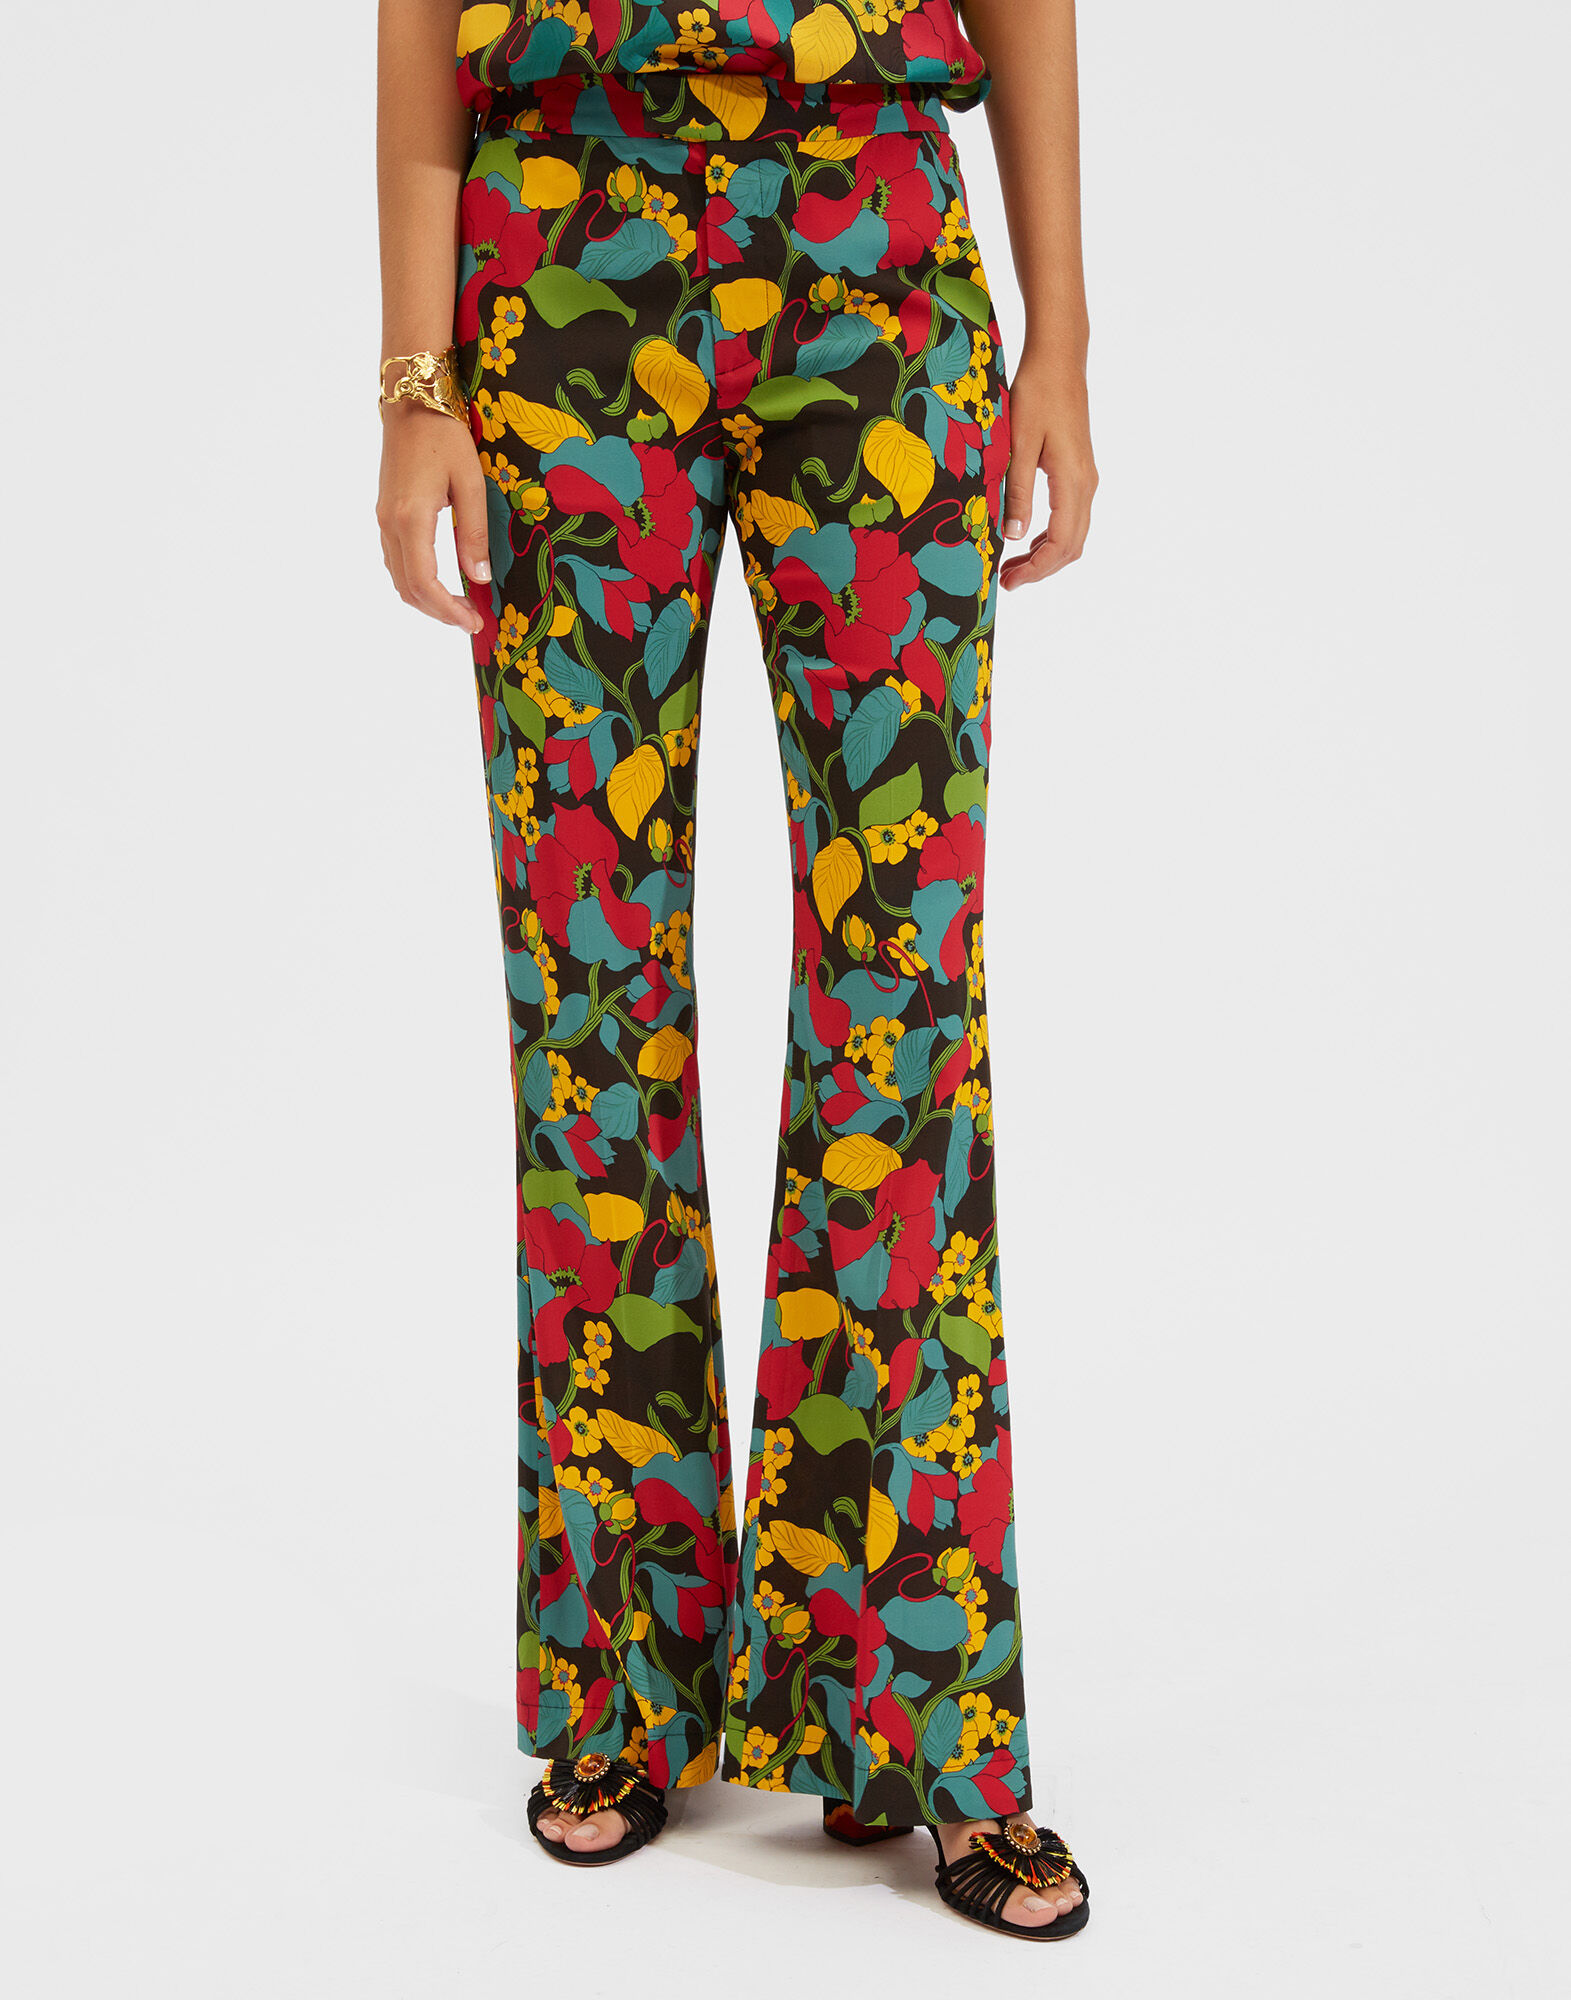 Avocado Print Pajama Set | Night suit for women, Pajama set, Pajamas women